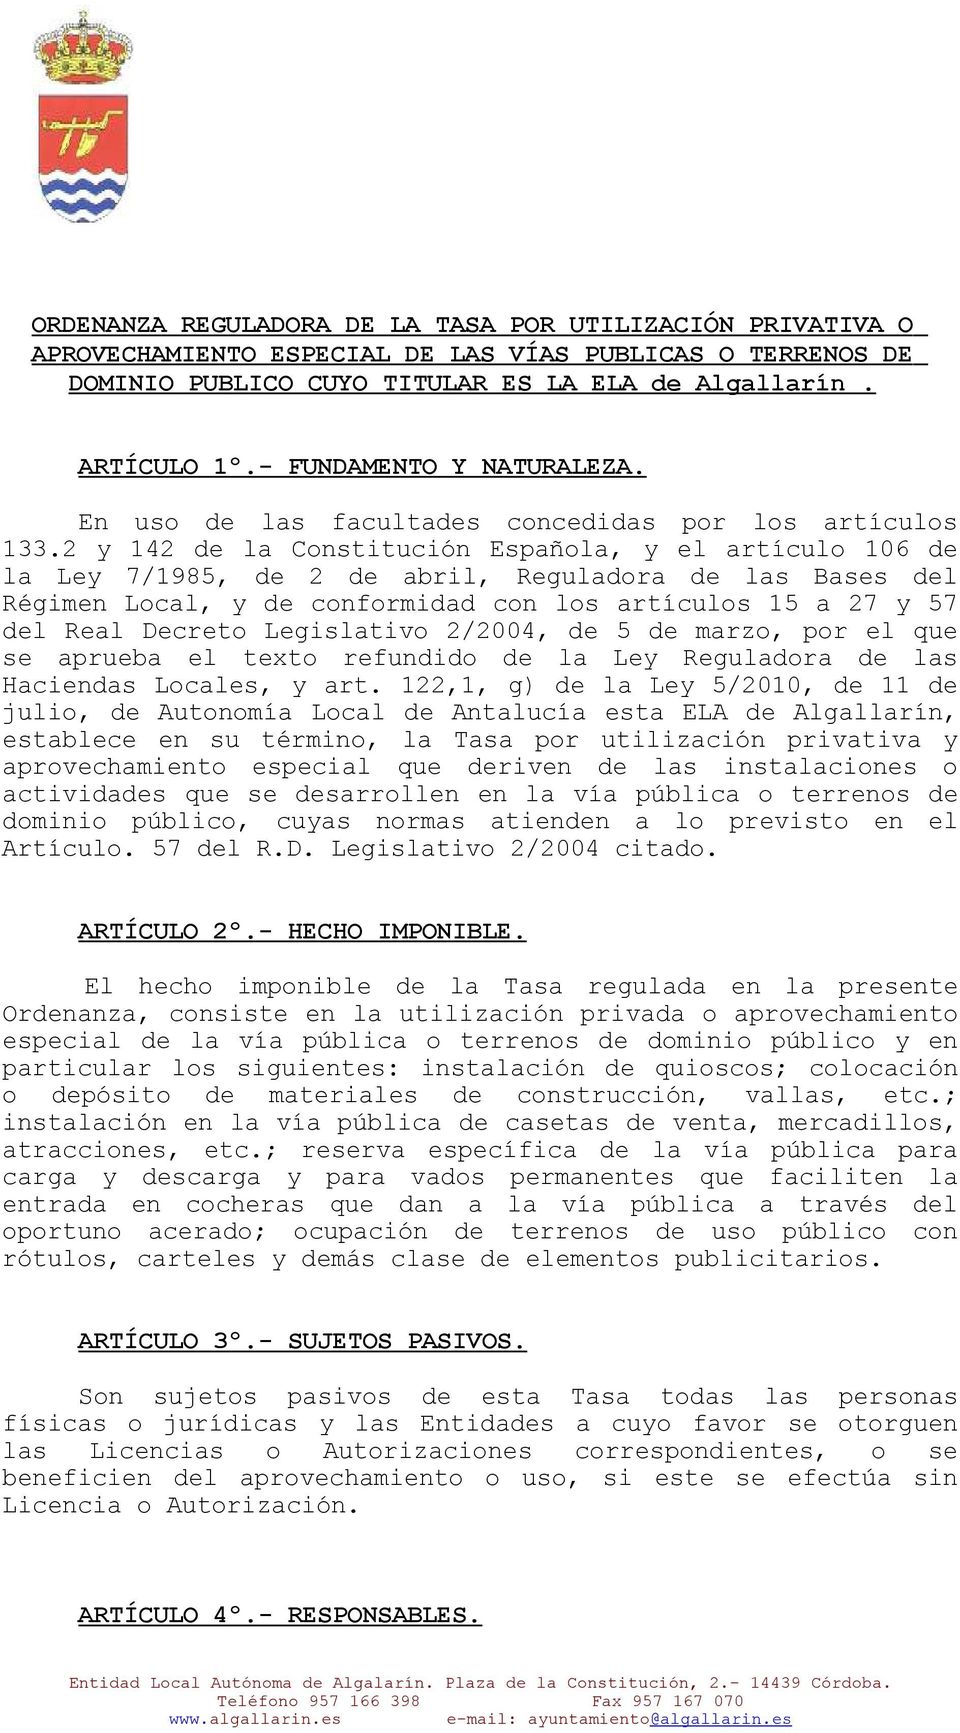 2 y 142 de la Constitución Española, y el artículo 106 de la Ley 7/1985, de 2 de abril, Reguladora de las Bases del Régimen Local, y de conformidad con los artículos 15 a 27 y 57 del Real Decreto